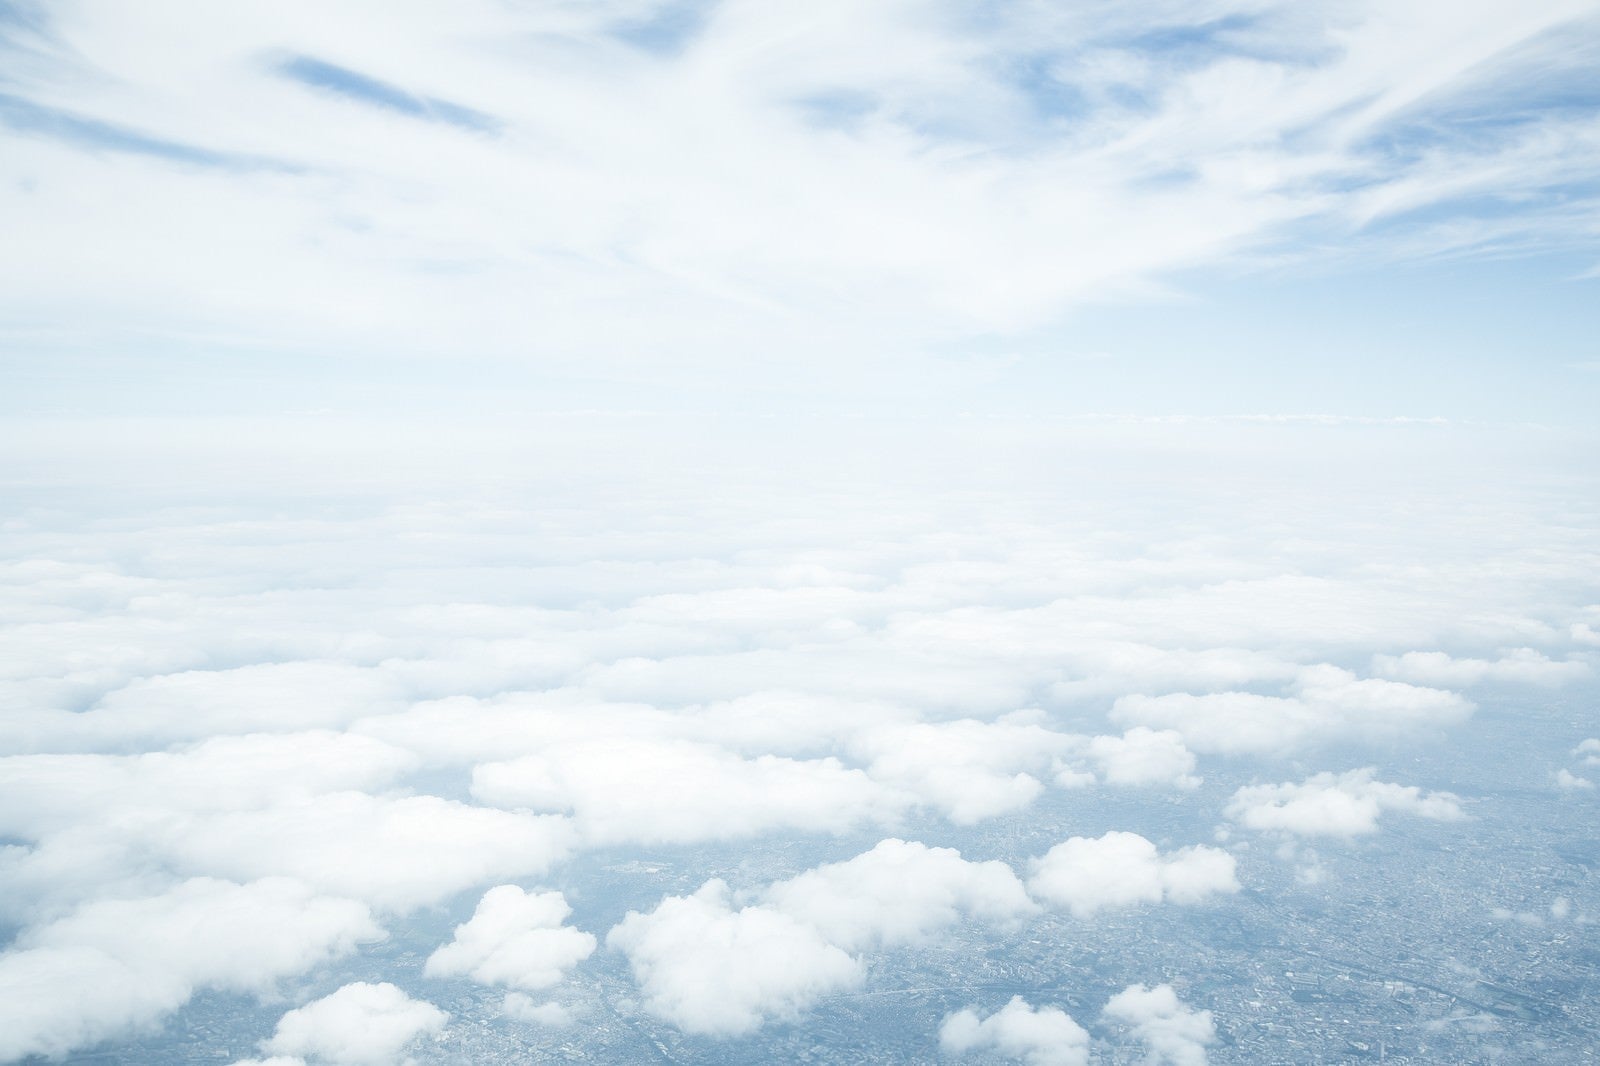 「低い雲と高い位置の雲」の写真